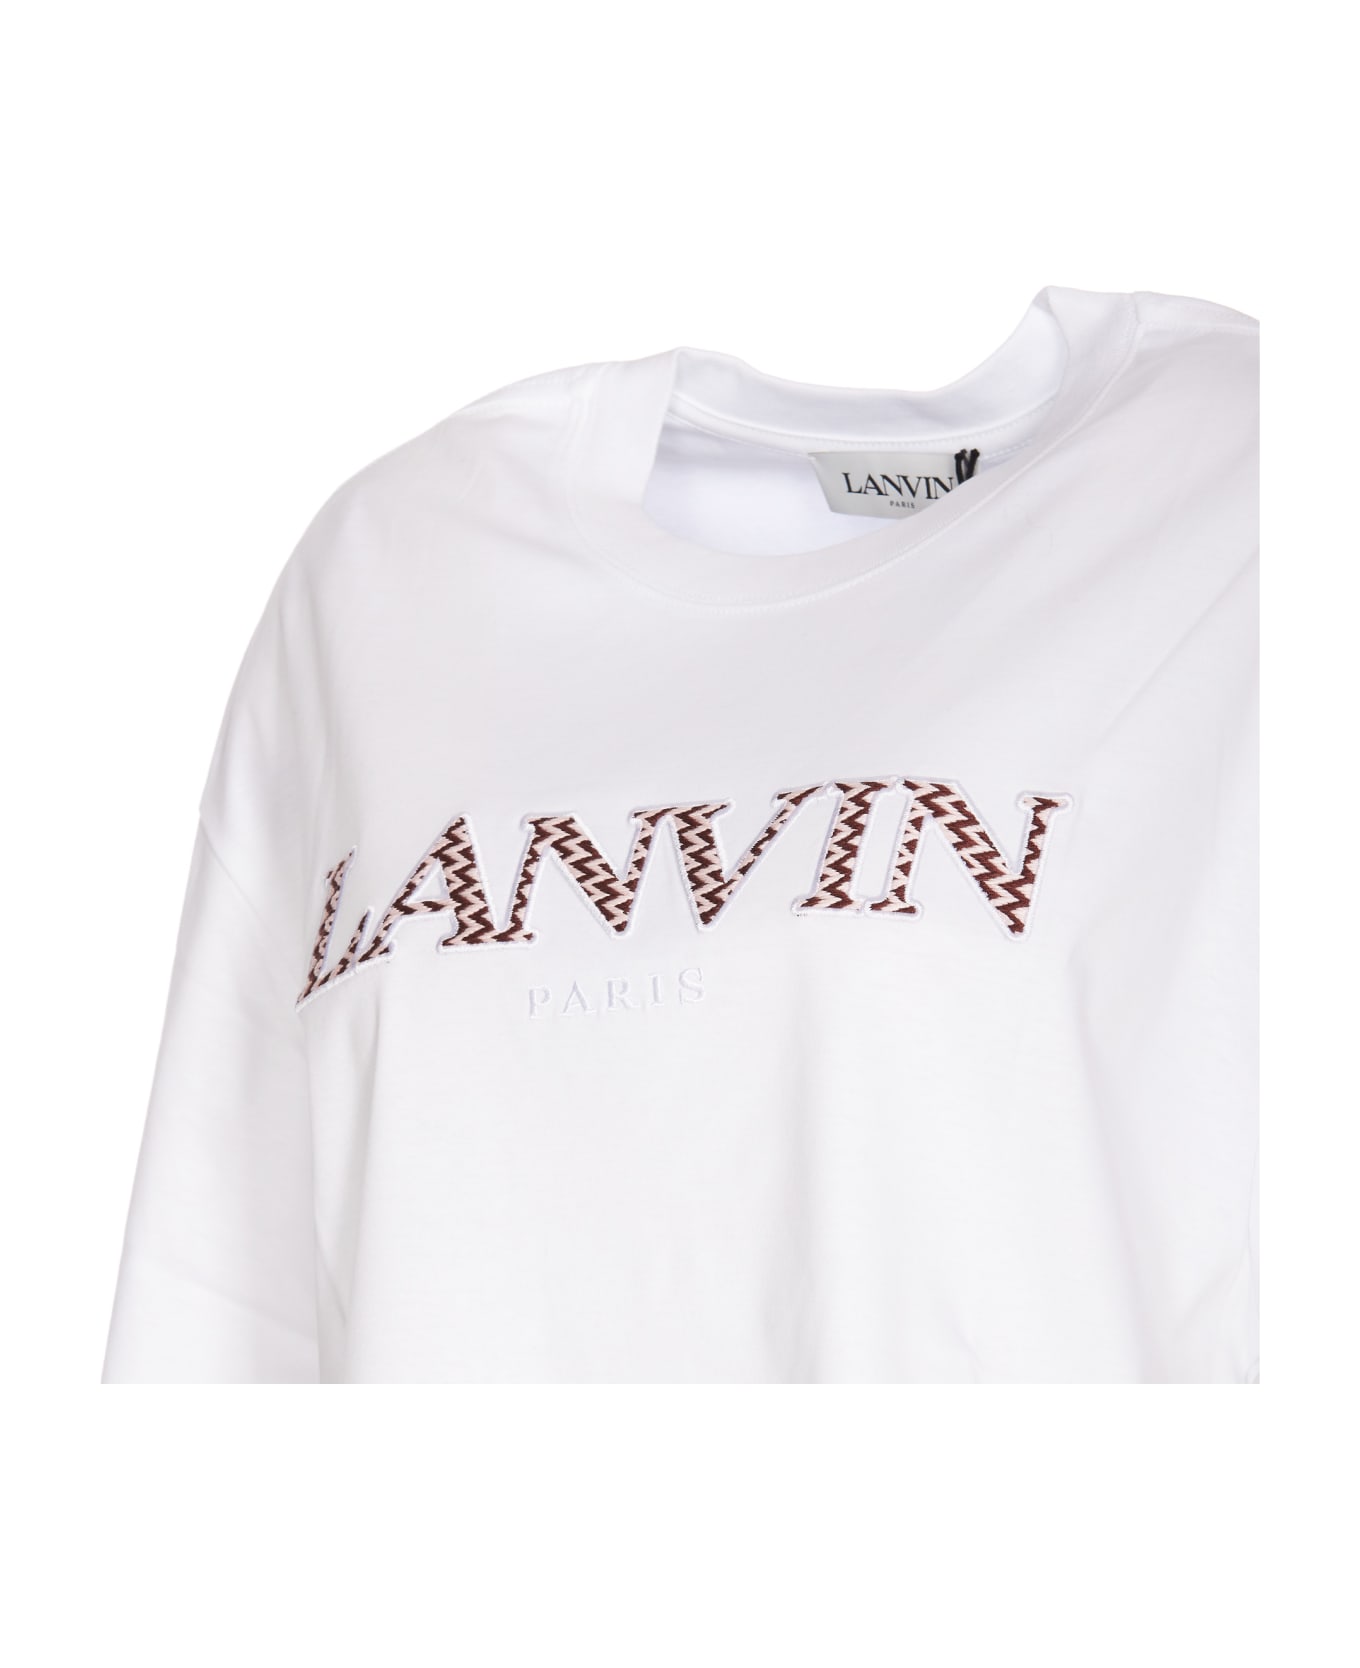 Lanvin Curb T-shirt - White